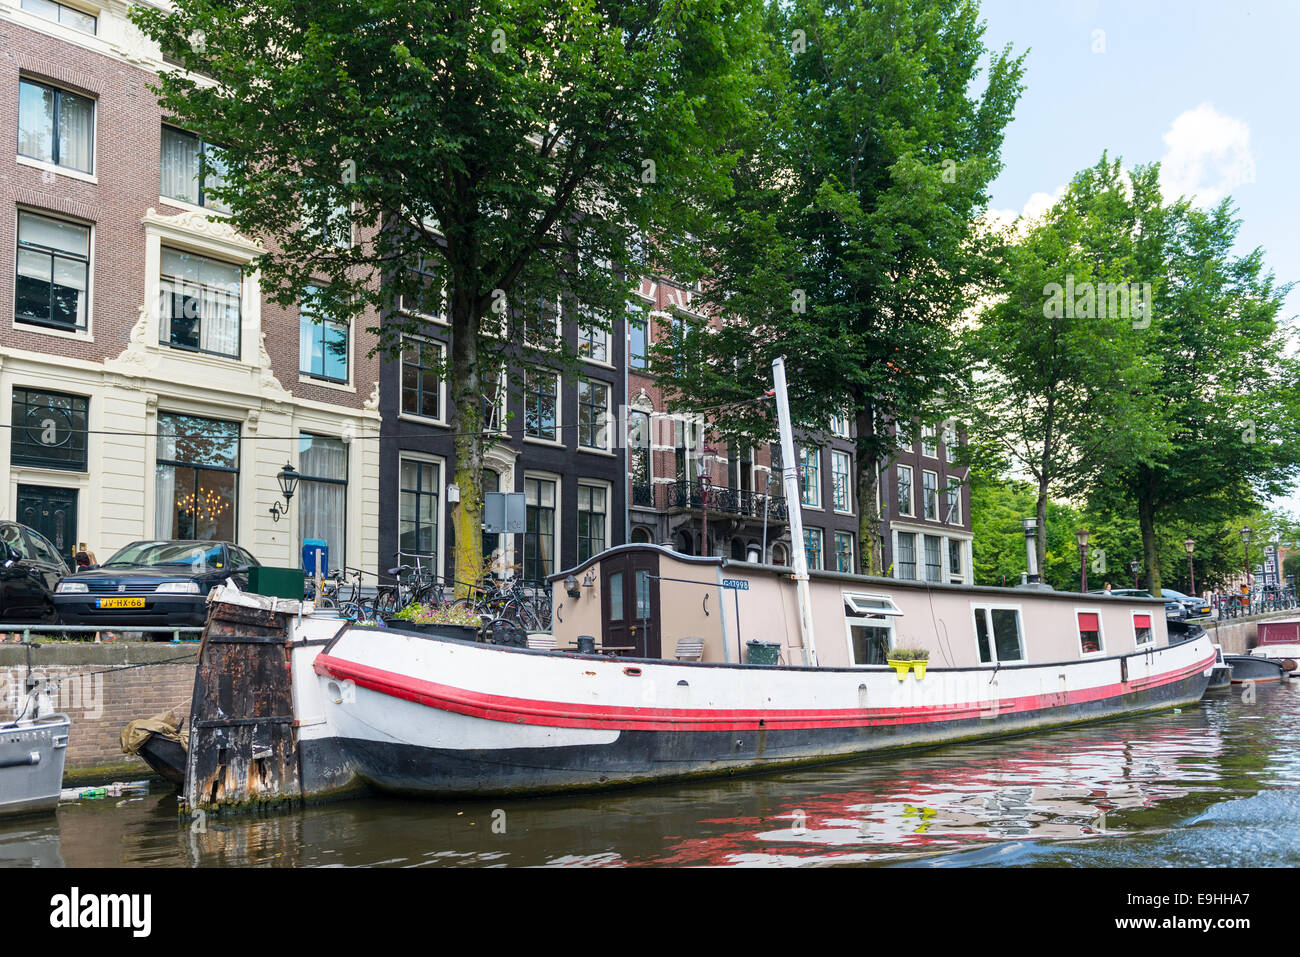 Hausboot am Ufer eines Kanals mit Bäumen, Amsterdam, Niederlande Stockfoto